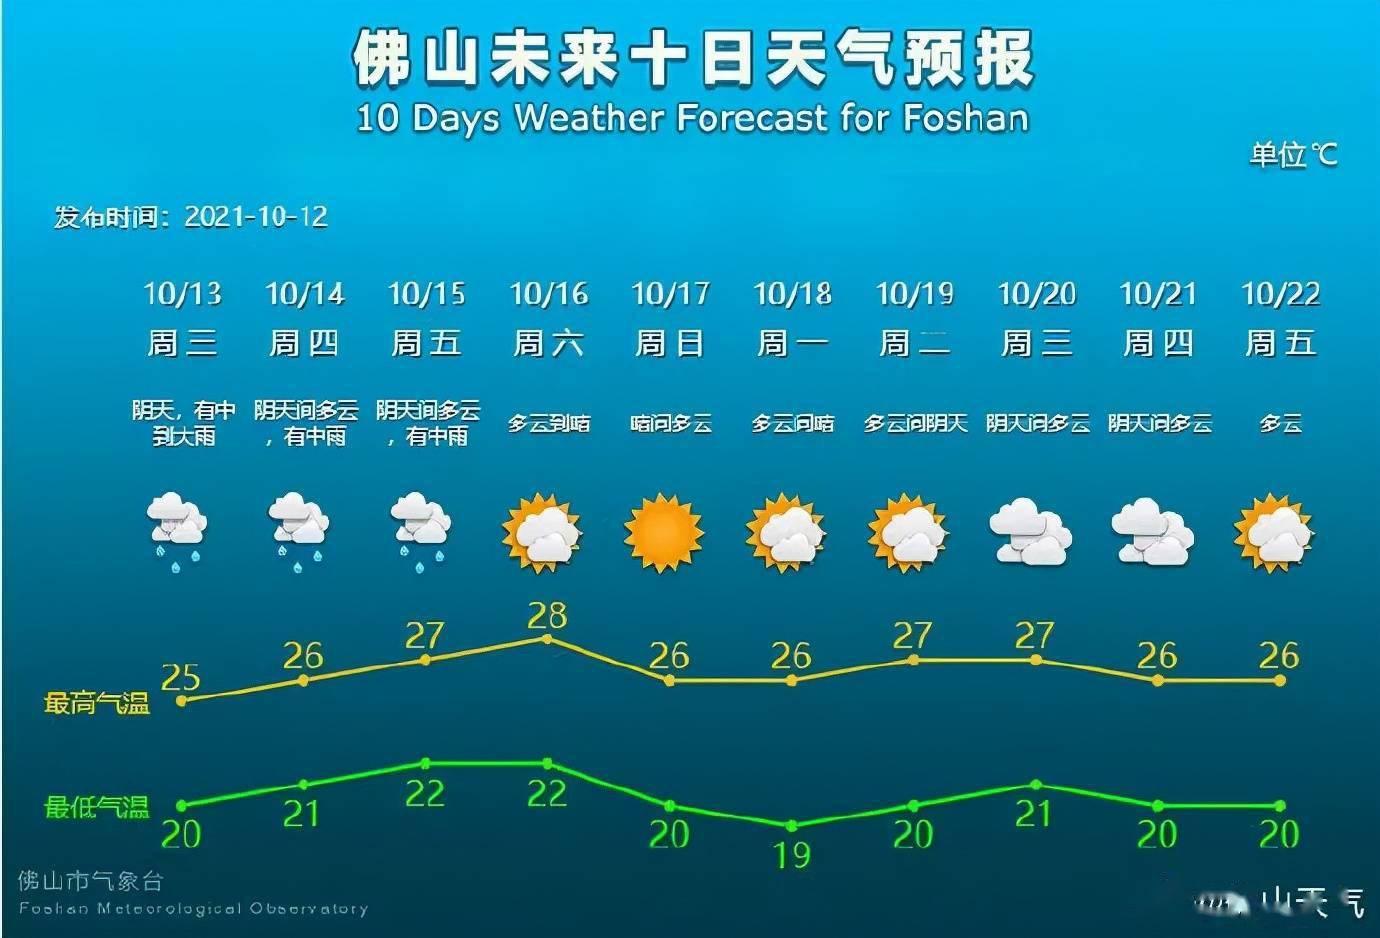 未来10天天气预报如下10月16日雨势减弱,多云到晴,气温升至22℃~28℃